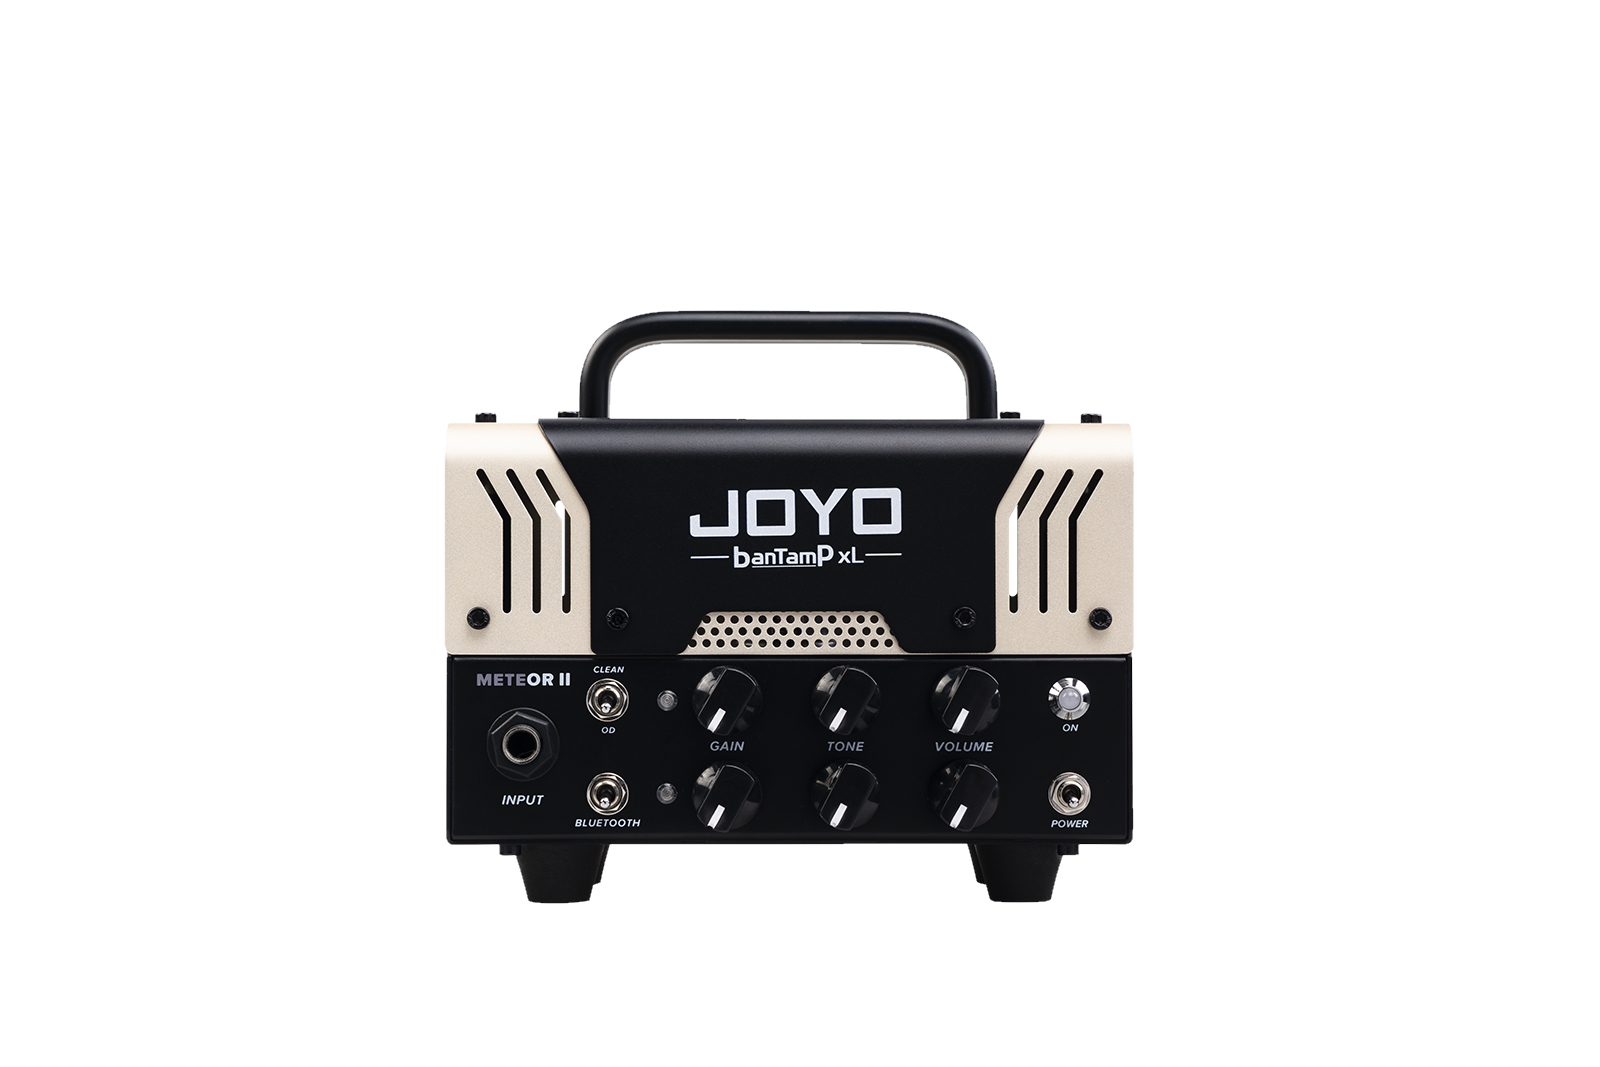 Гитарные усилители Joyo BanTamP XL METEOR-II усилители многоканальные ld systems deep2 4950